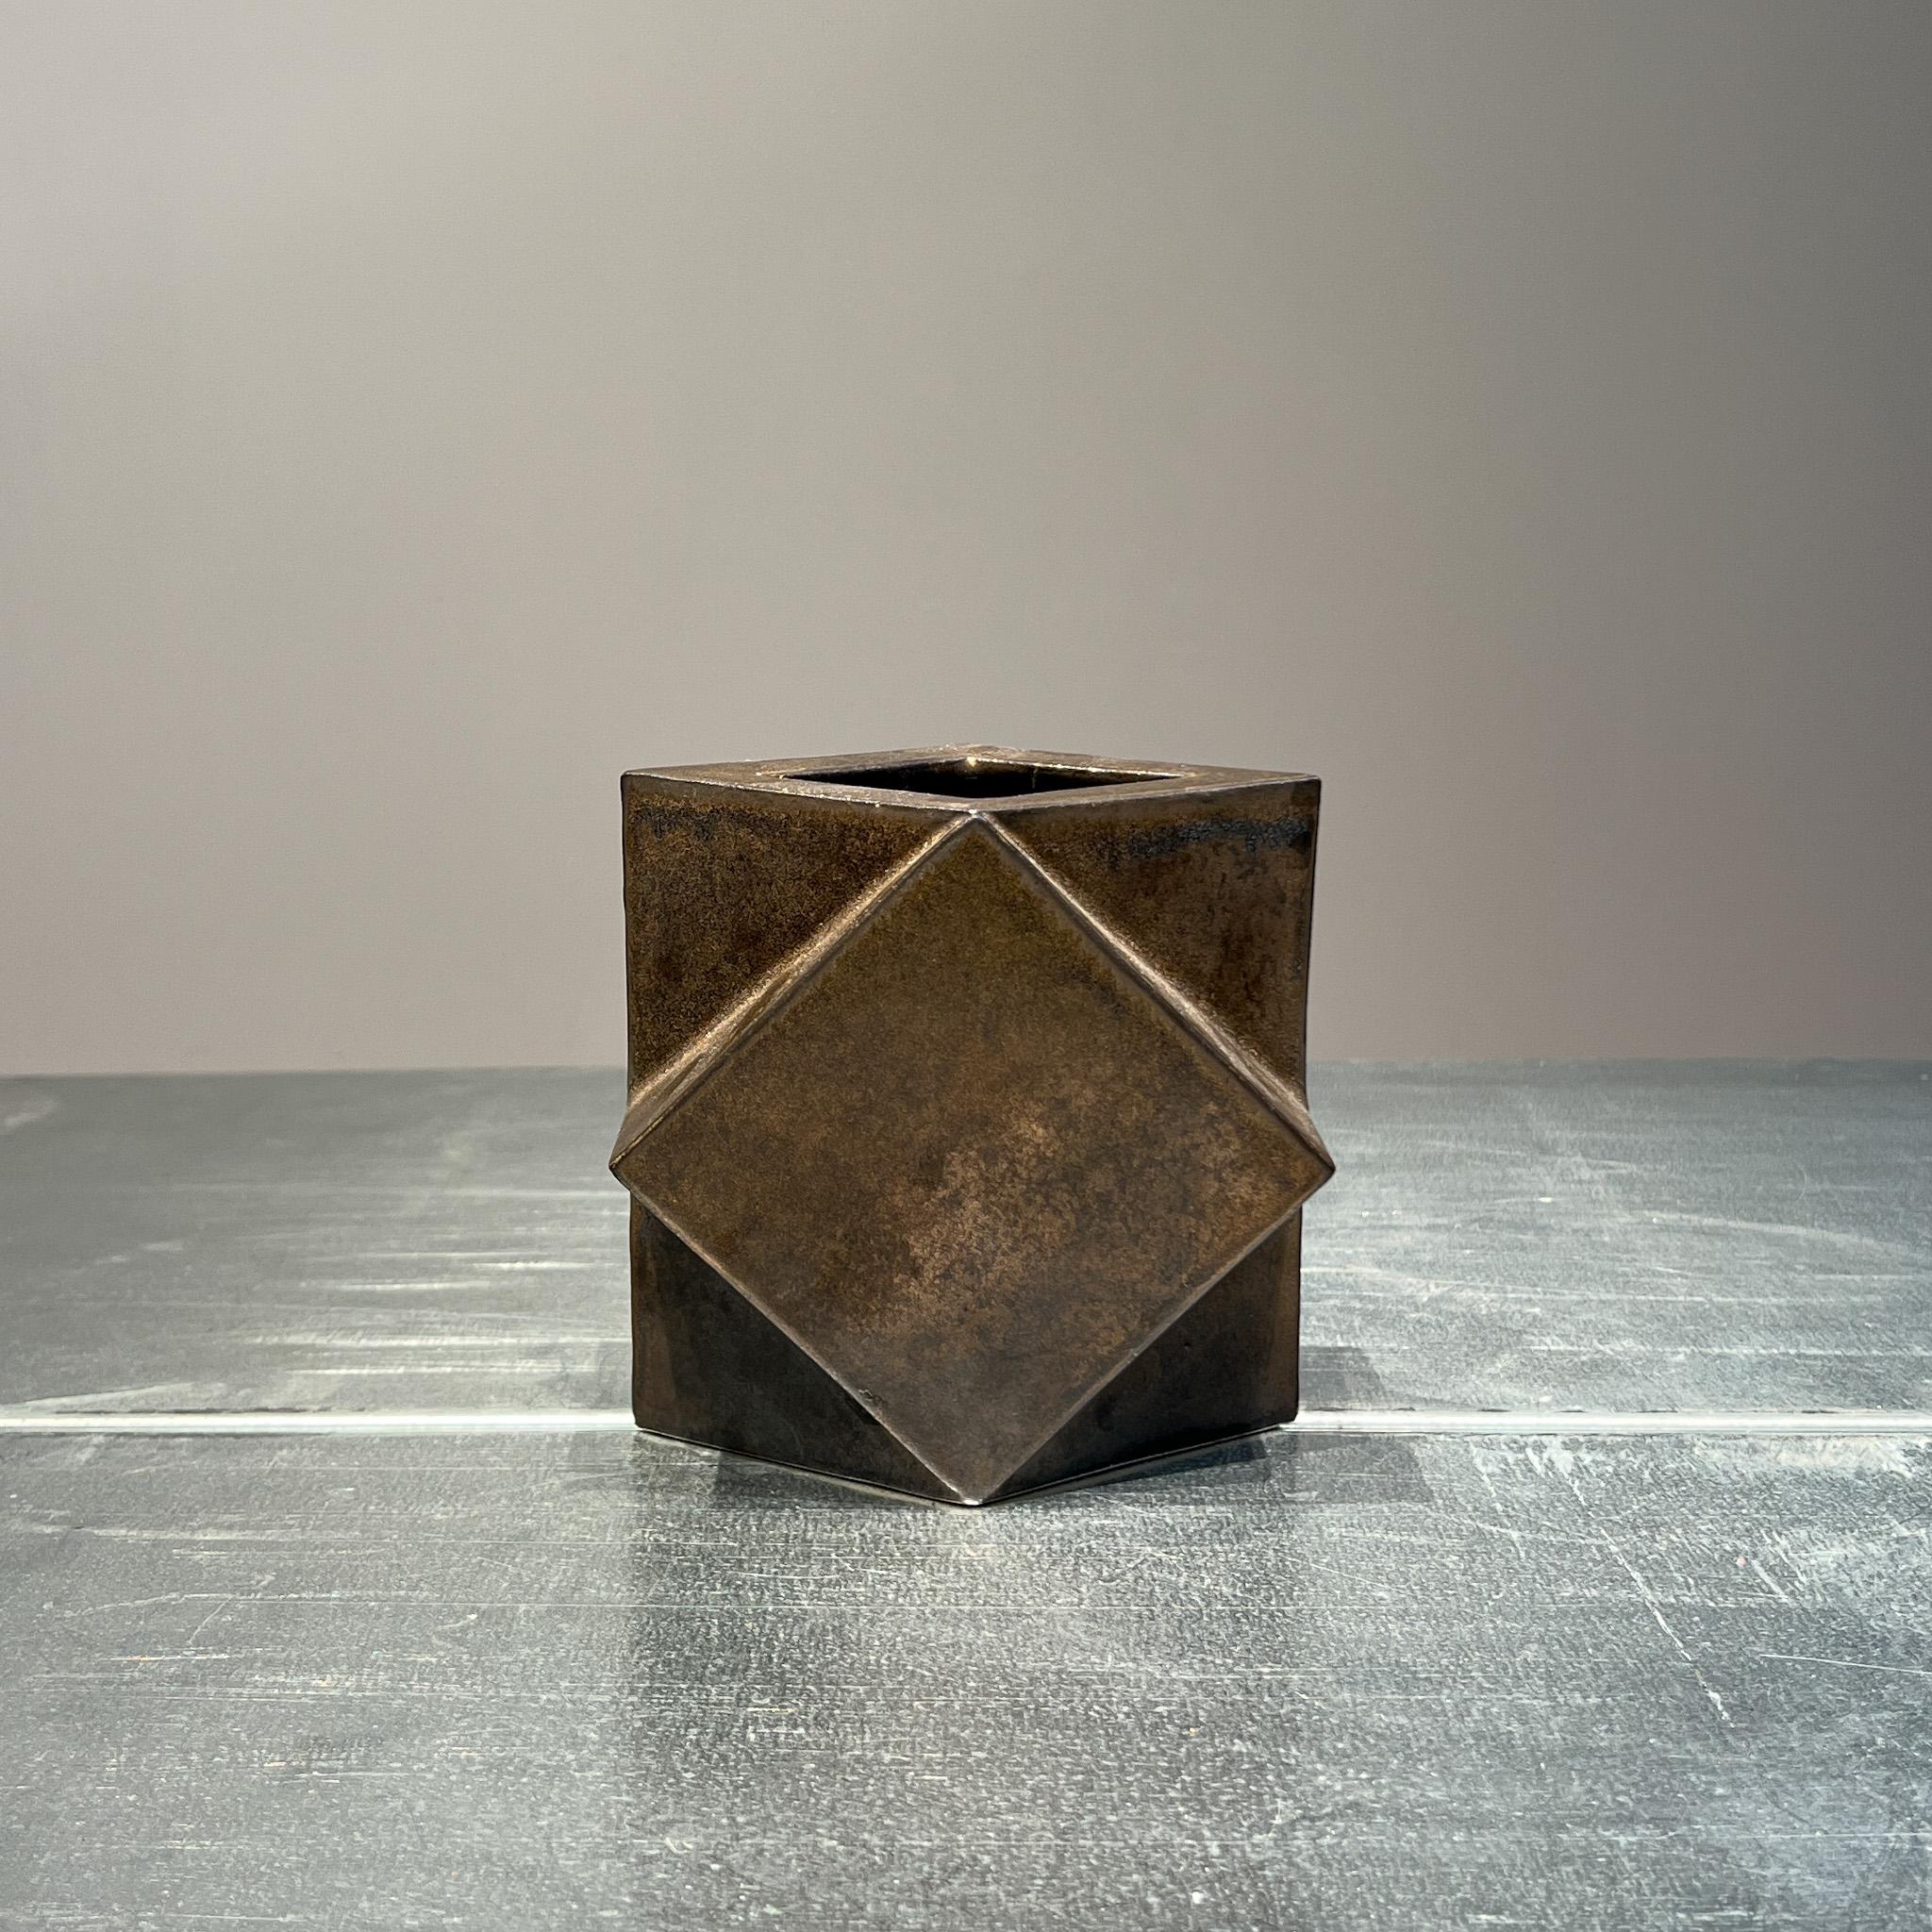 20th Century Dutch modernist constructivist vase by Jan van der Vaart